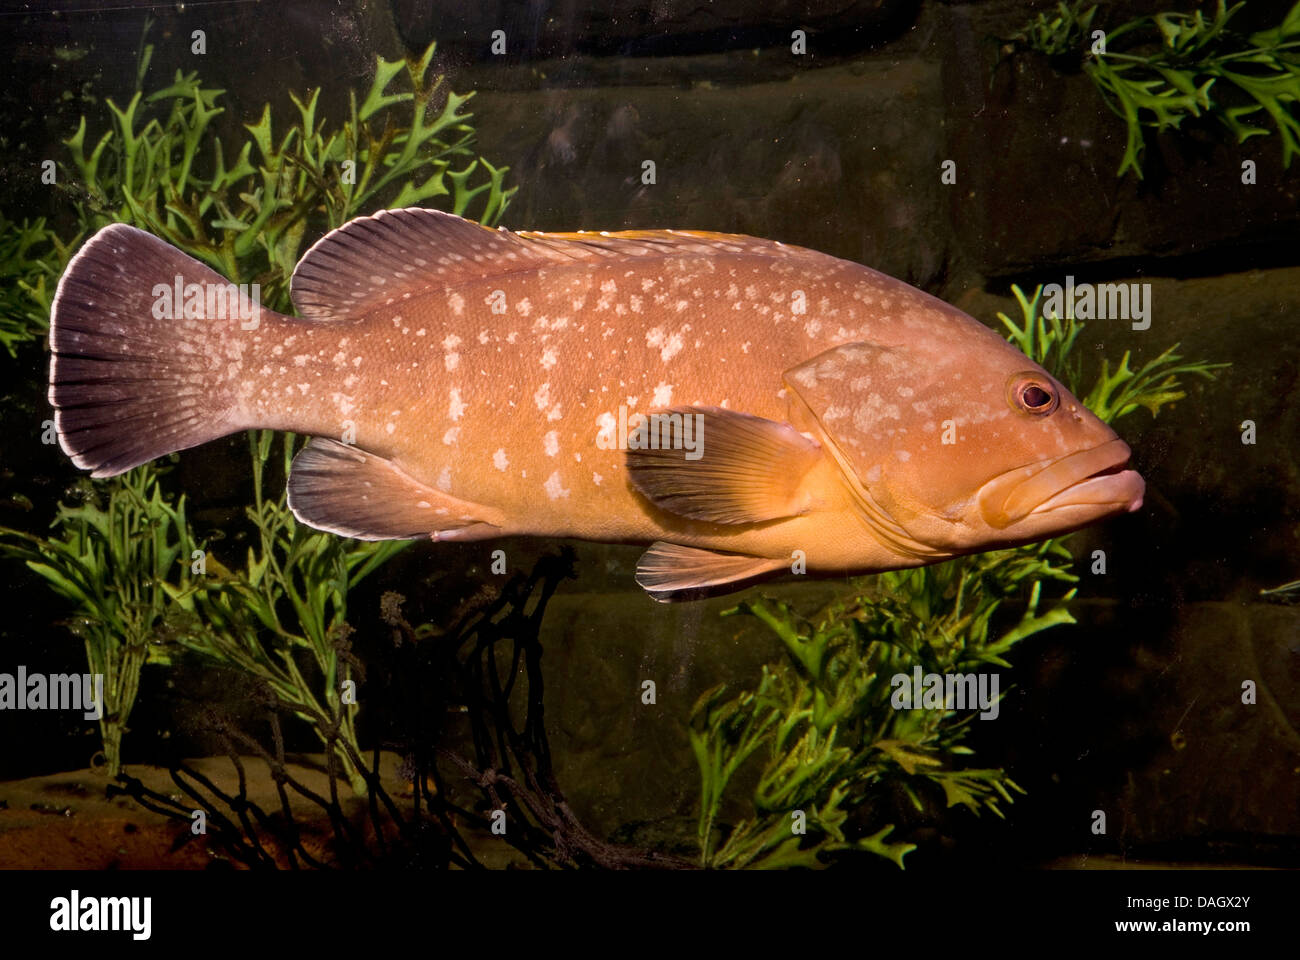 Dusky grouper, Epinephelus marginatus (sombre), la natation chez les plantes de l'eau Banque D'Images